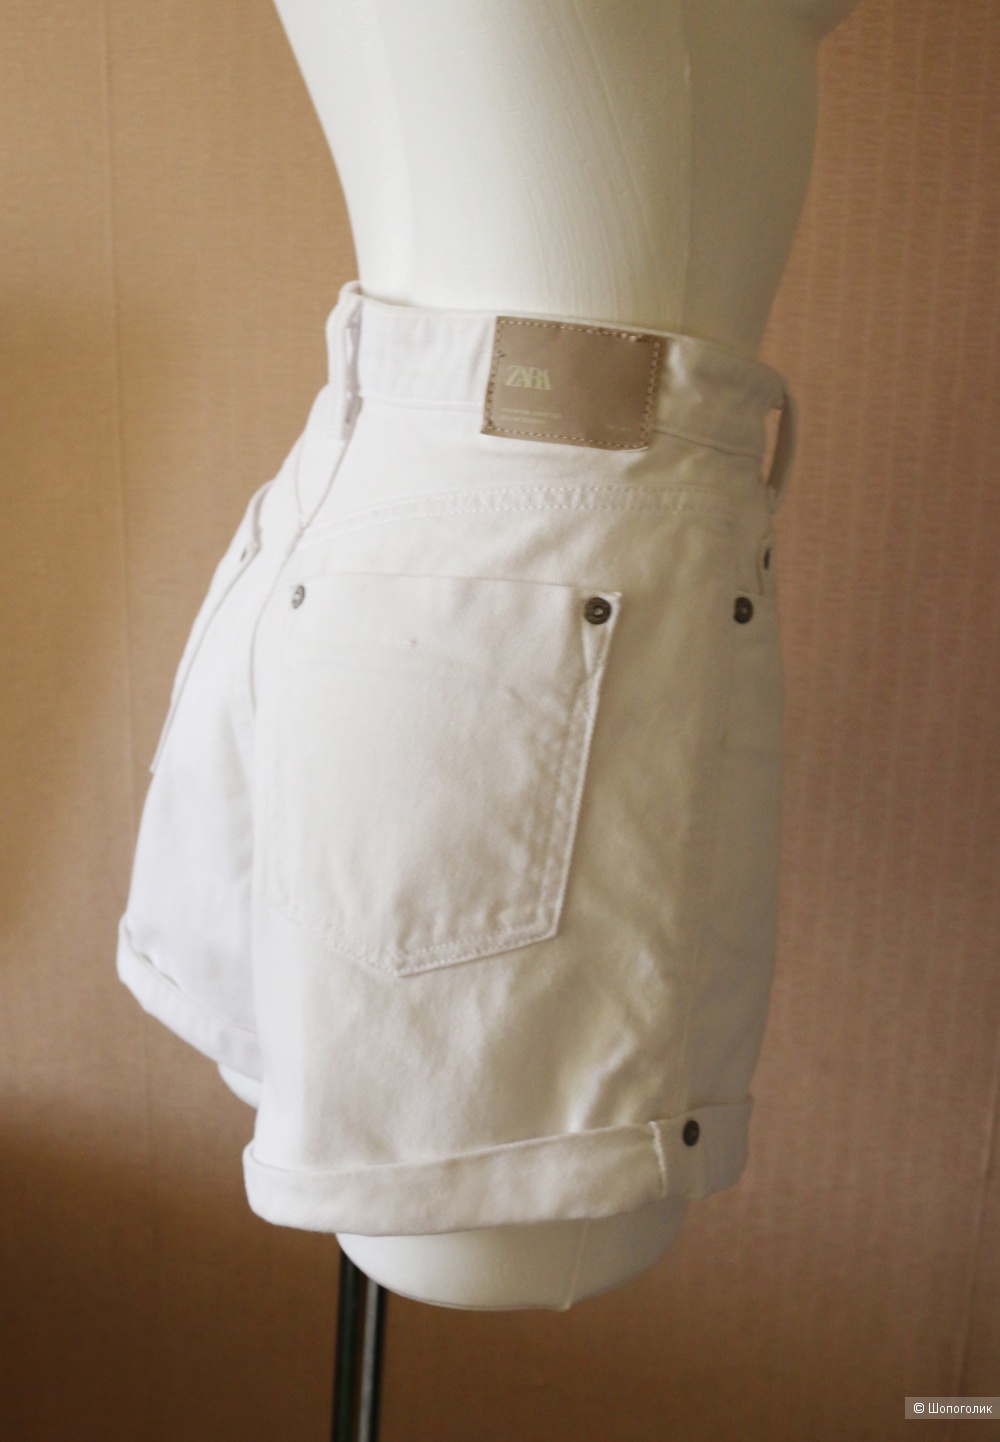 Джинсовые шорты белые Zara размер 42-44